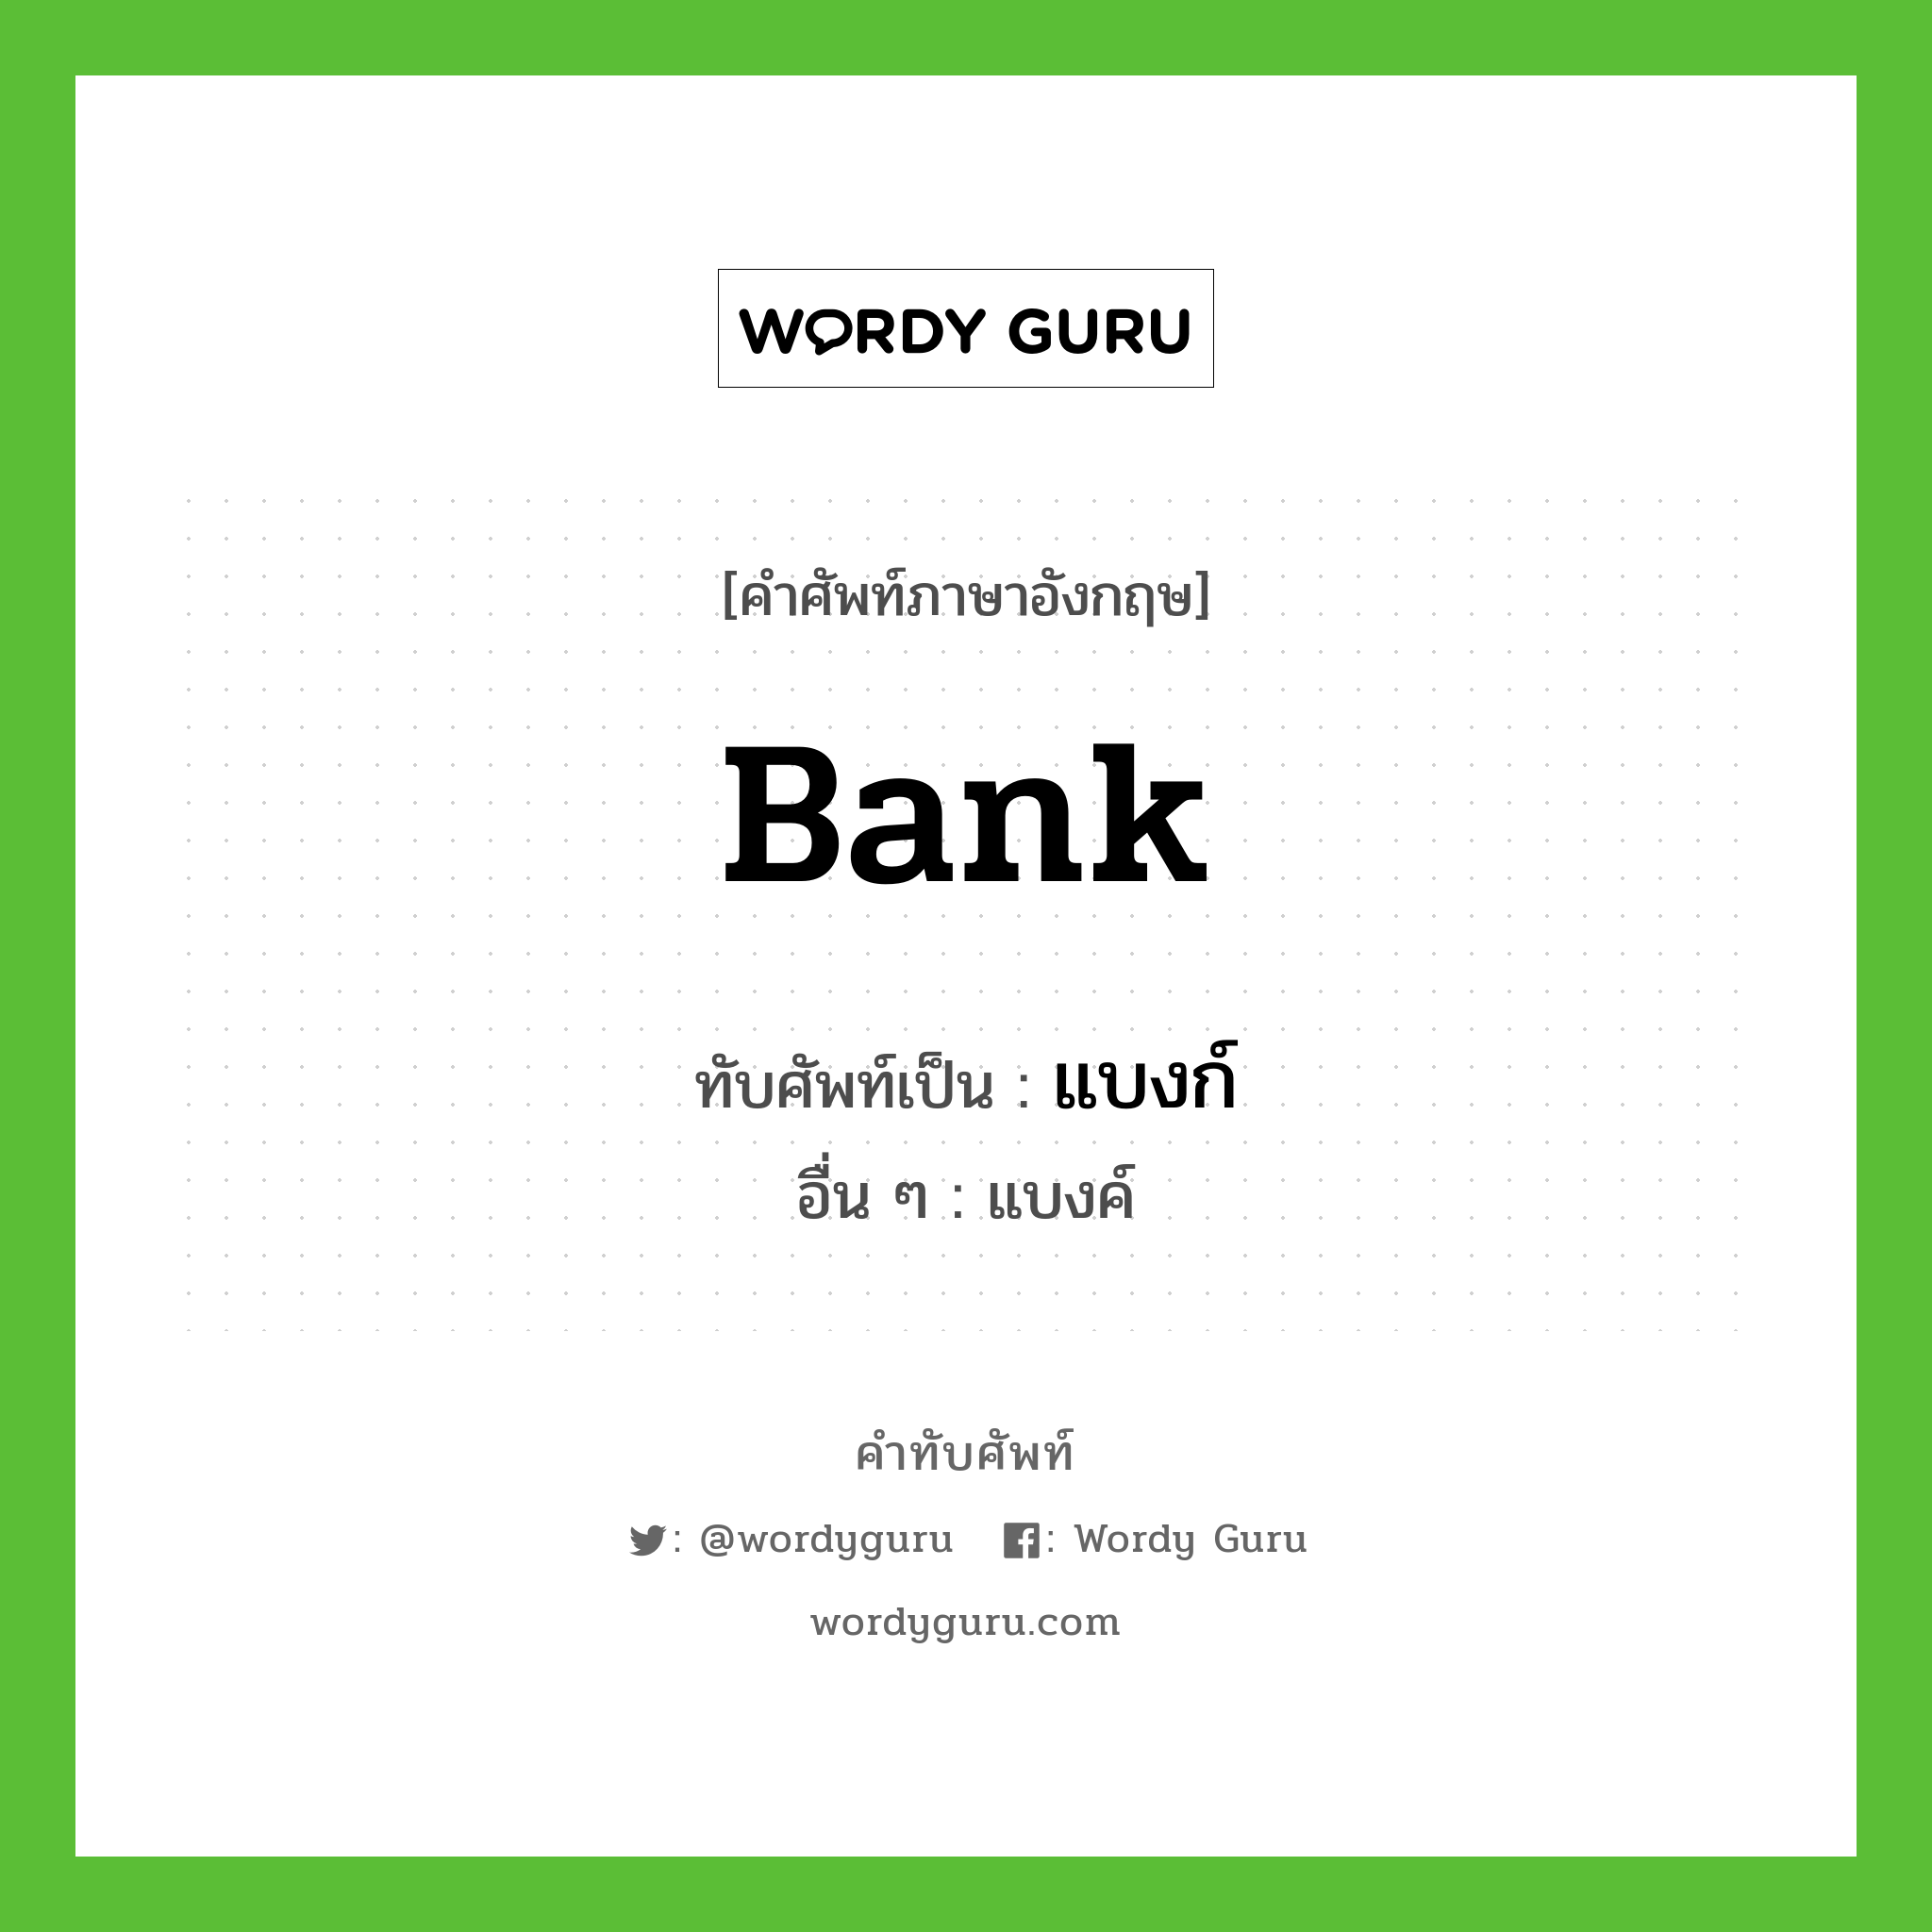 bank เขียนเป็นคำไทยว่าอะไร?, คำศัพท์ภาษาอังกฤษ bank ทับศัพท์เป็น แบงก์ อื่น ๆ แบงค์